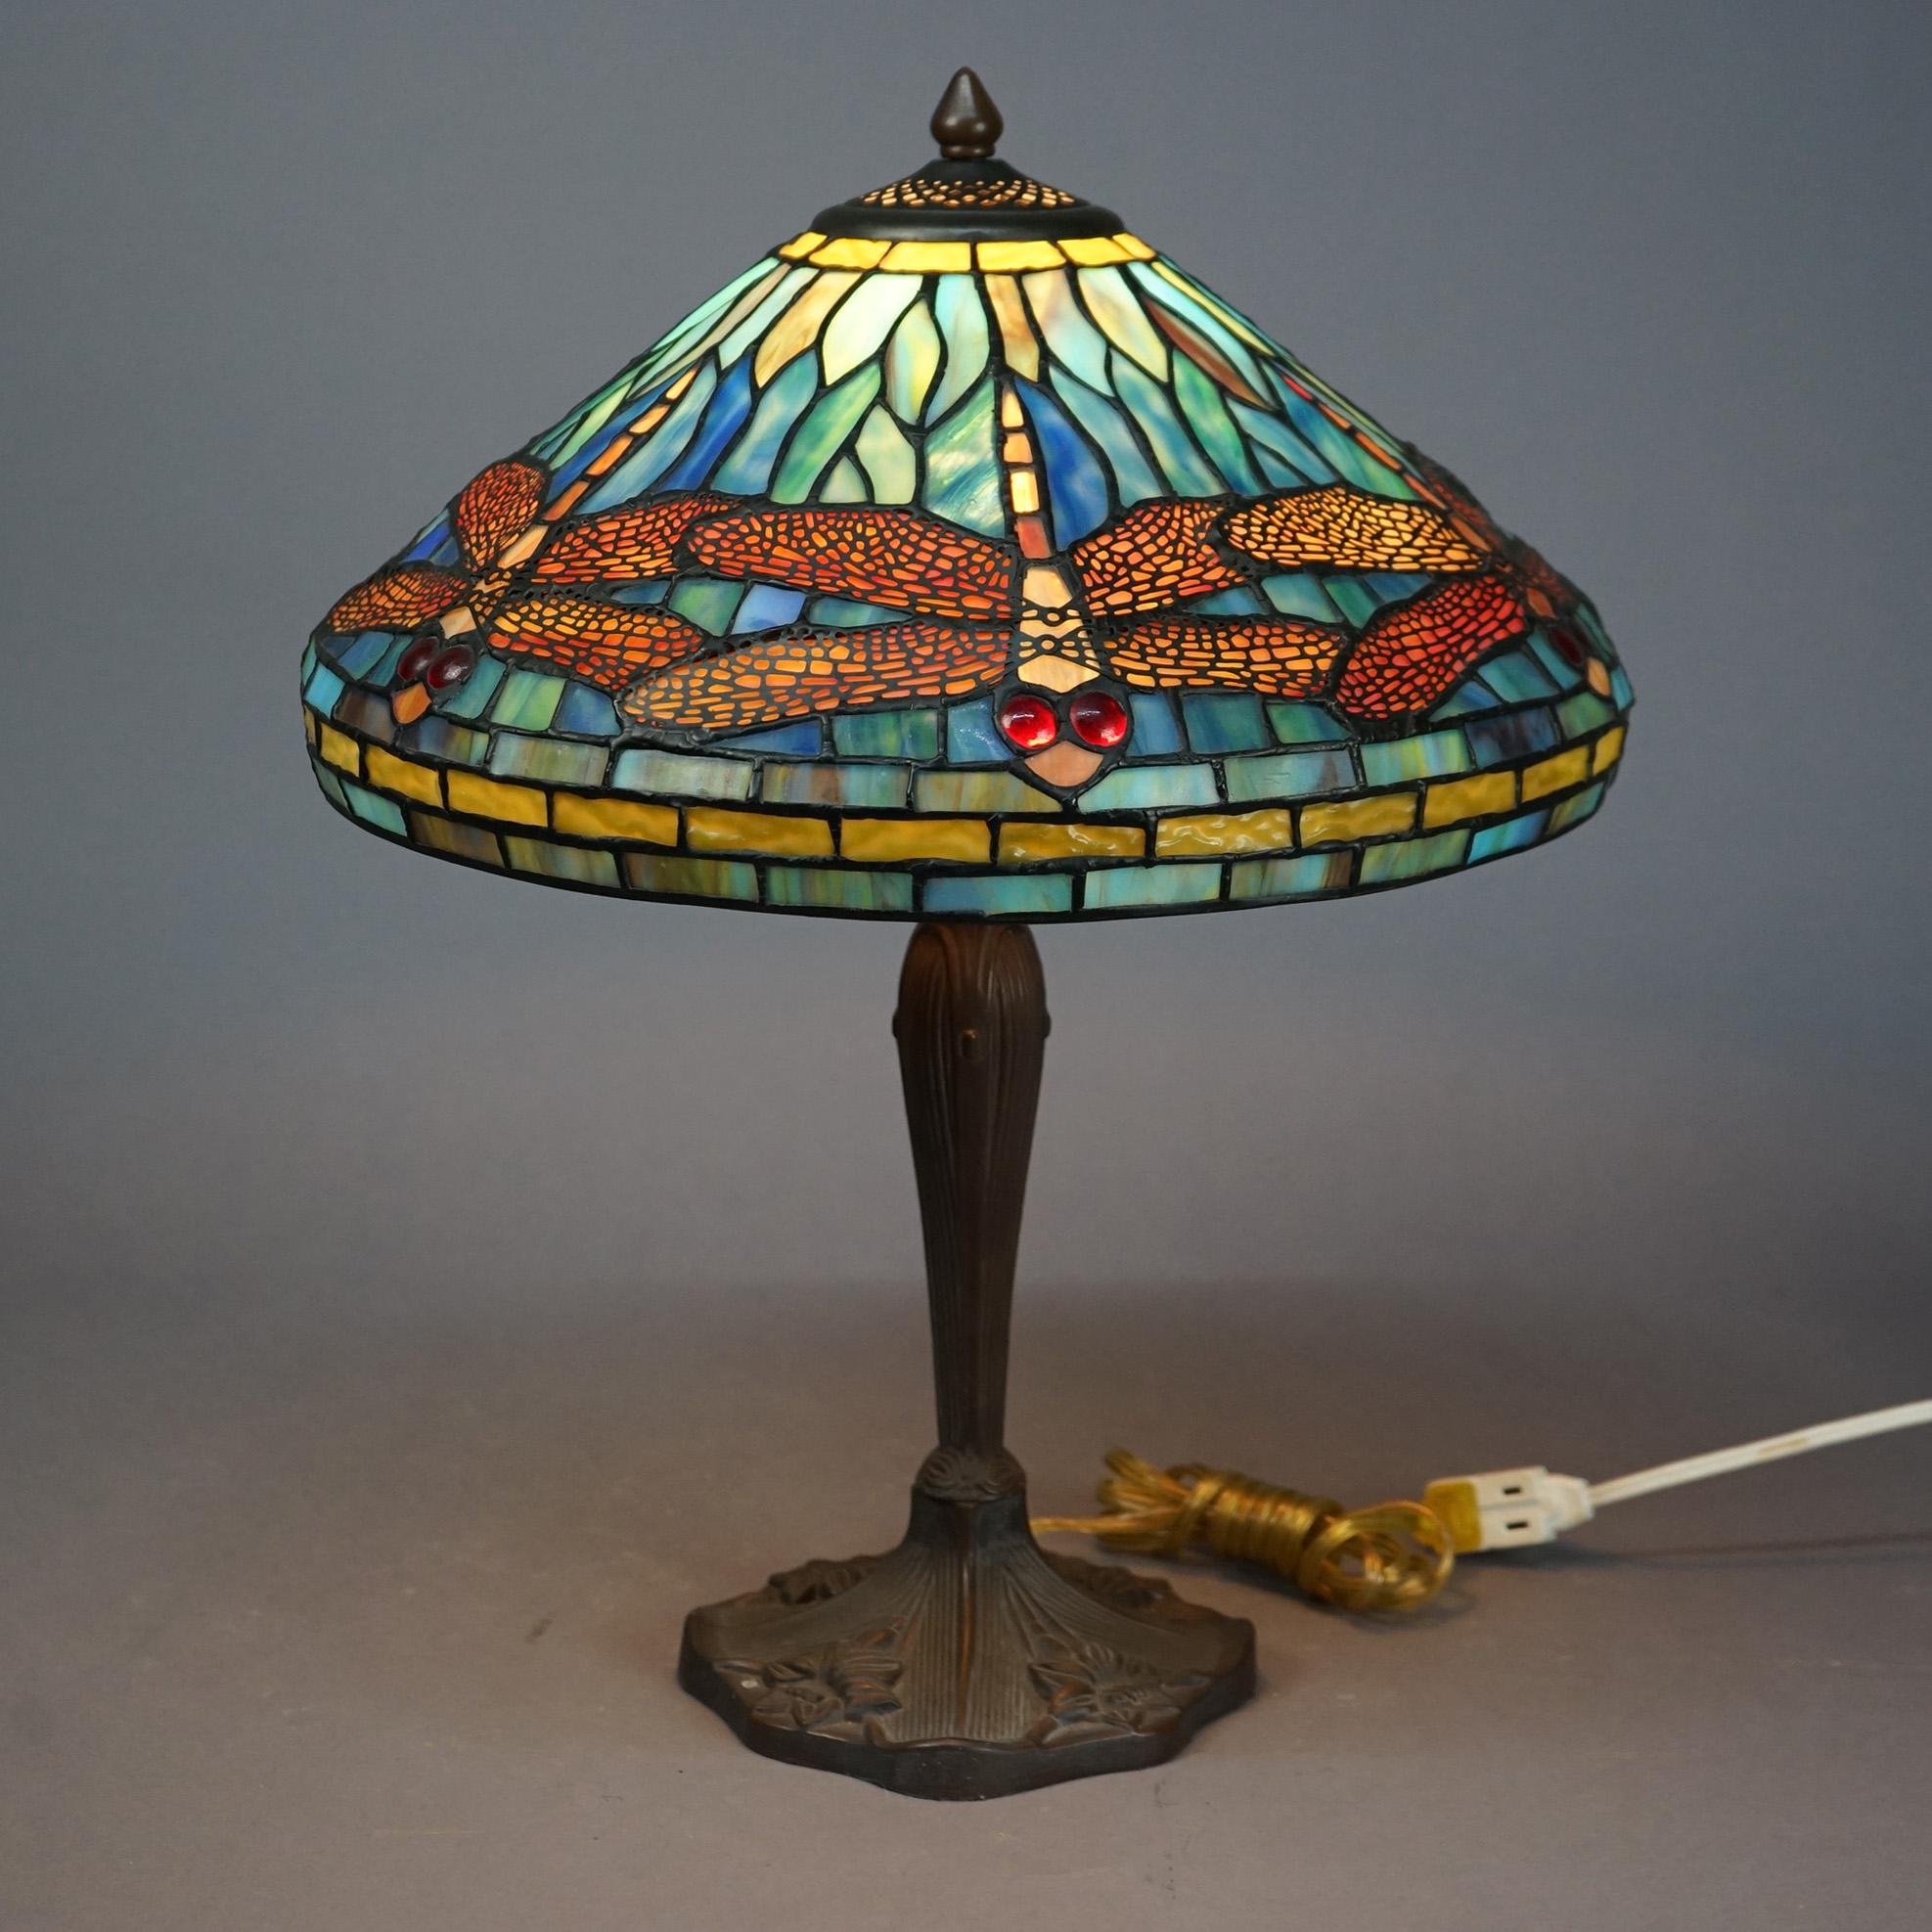 Lampe de table à la manière de Jewell, offrant un abat-jour en forme de libellule en verre plombé, teinté et orné de bijoux, sur une base en fonte à une seule douille, 20e siècle.

Dimensions : 21,5'' H x 16'' L x 16'' P.